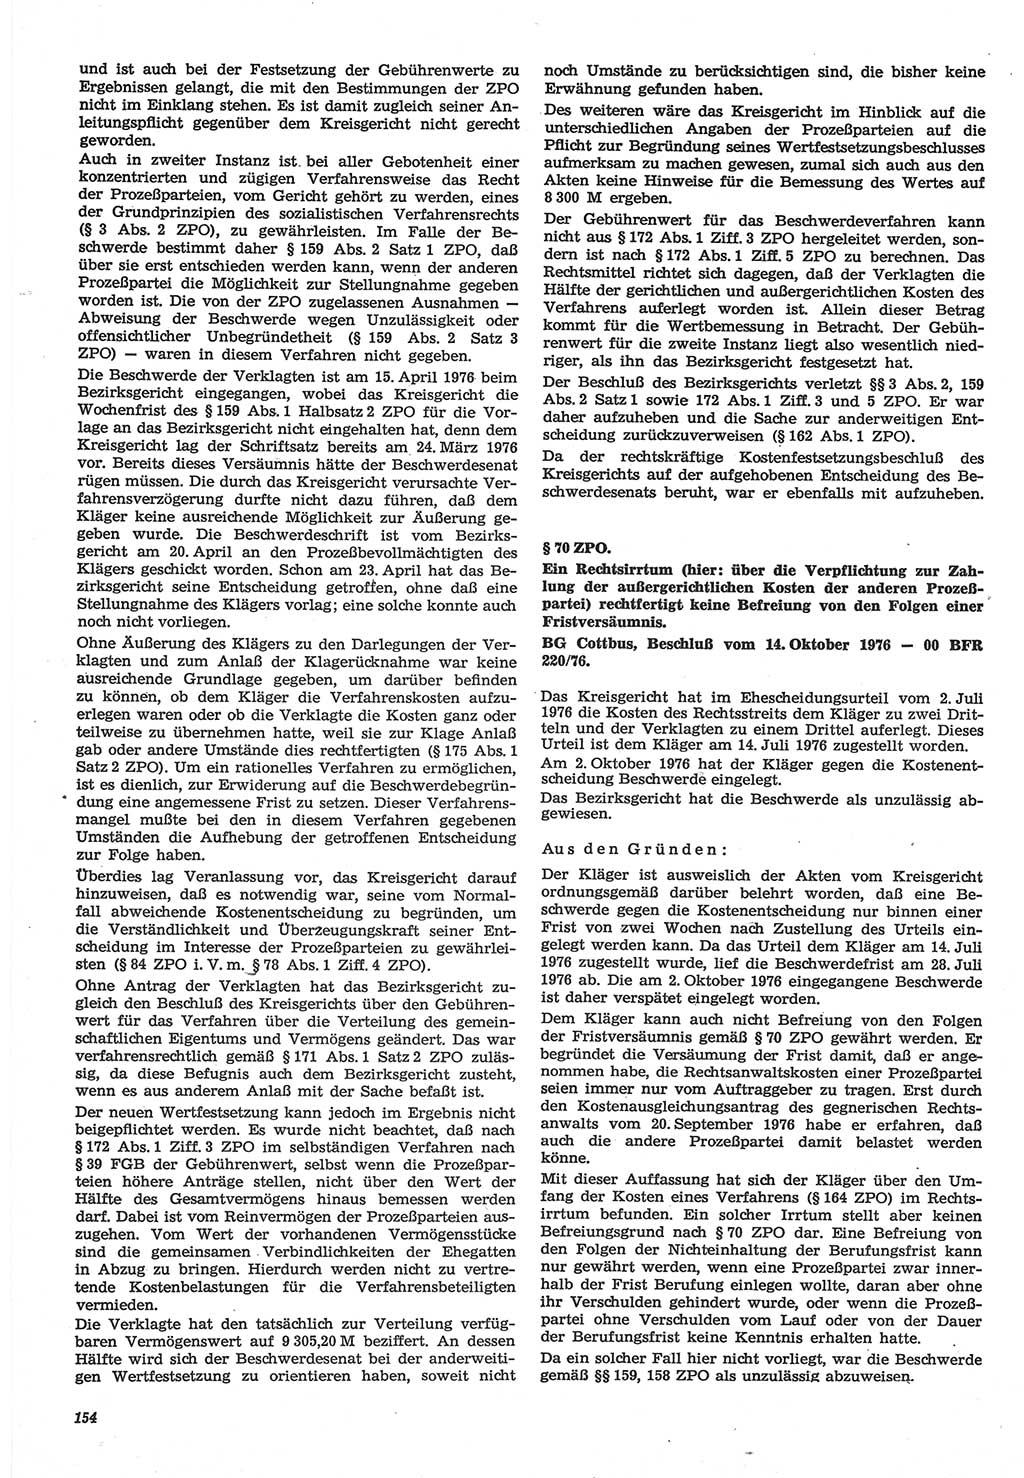 Neue Justiz (NJ), Zeitschrift für Recht und Rechtswissenschaft-Zeitschrift, sozialistisches Recht und Gesetzlichkeit, 31. Jahrgang 1977, Seite 154 (NJ DDR 1977, S. 154)